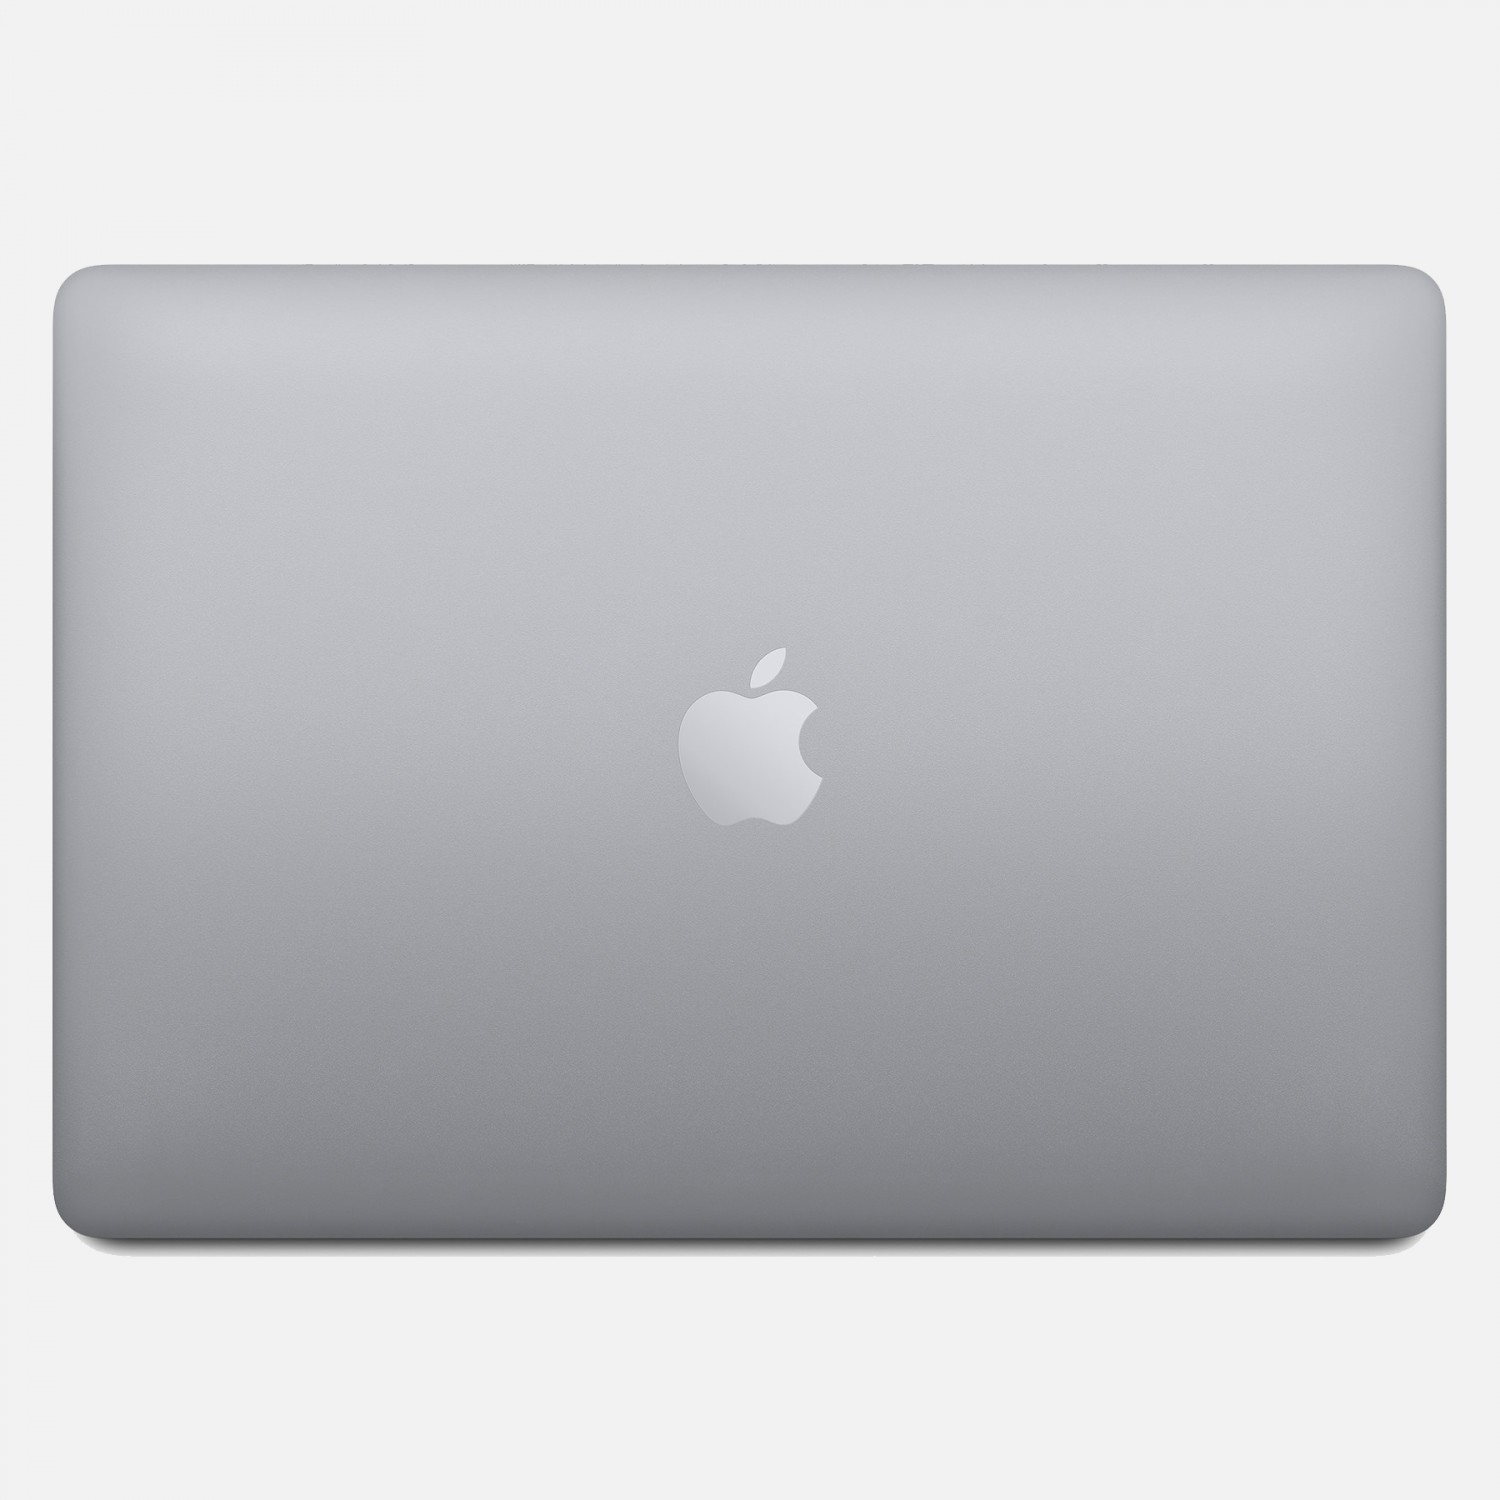 لپ تاپ Apple MacBook Pro 13 2020 CTO - Space Grey - F-5